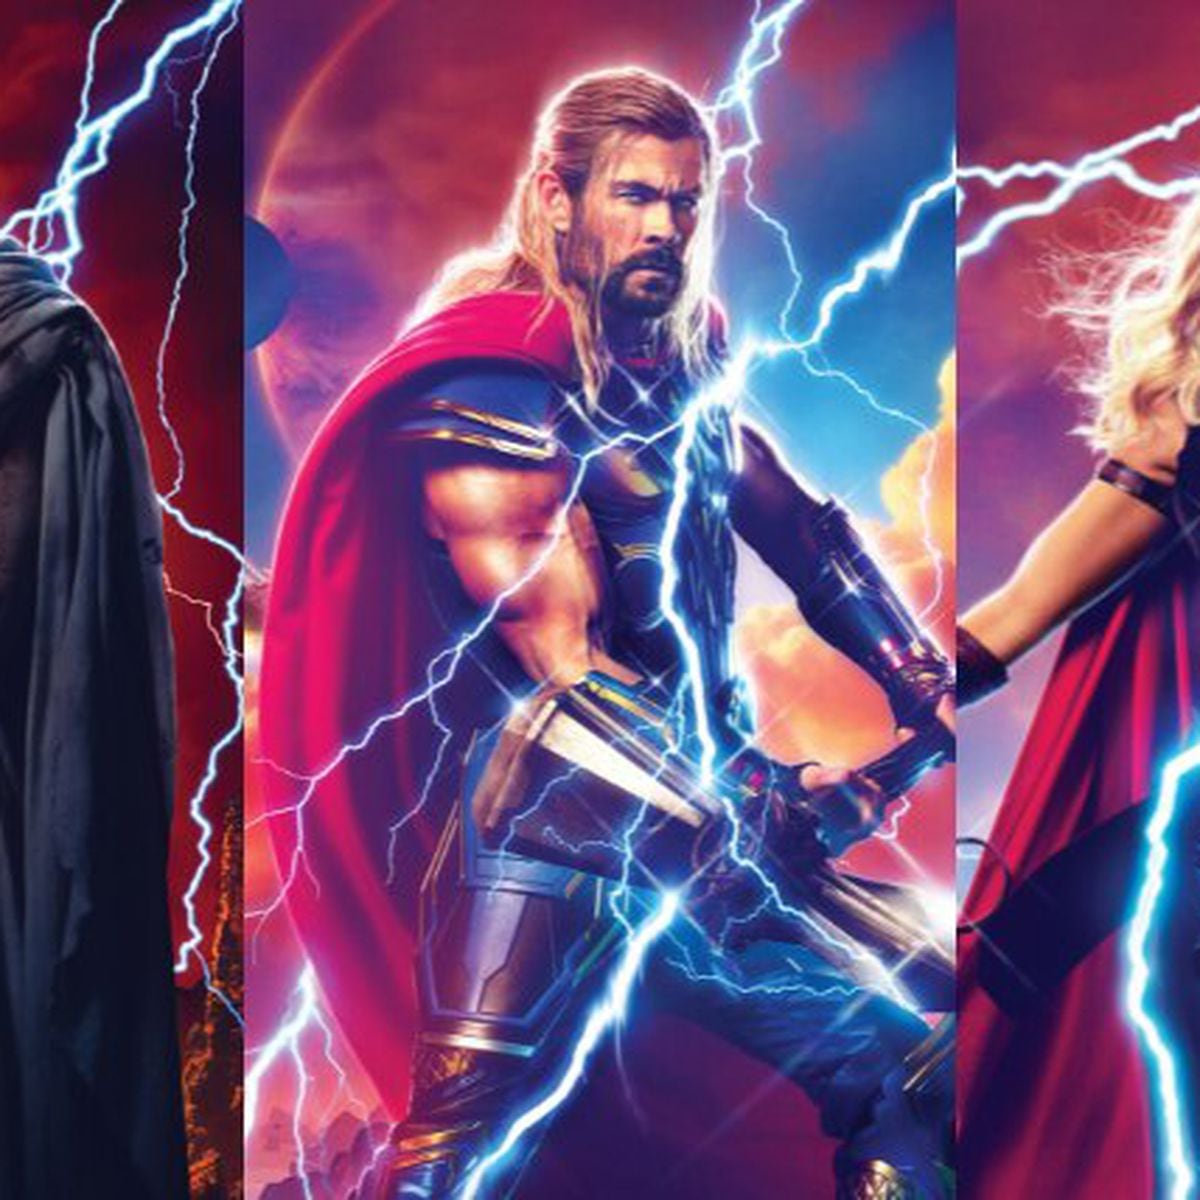 Slideshow: Thor: Love and Thunder - Possíveis personagens para